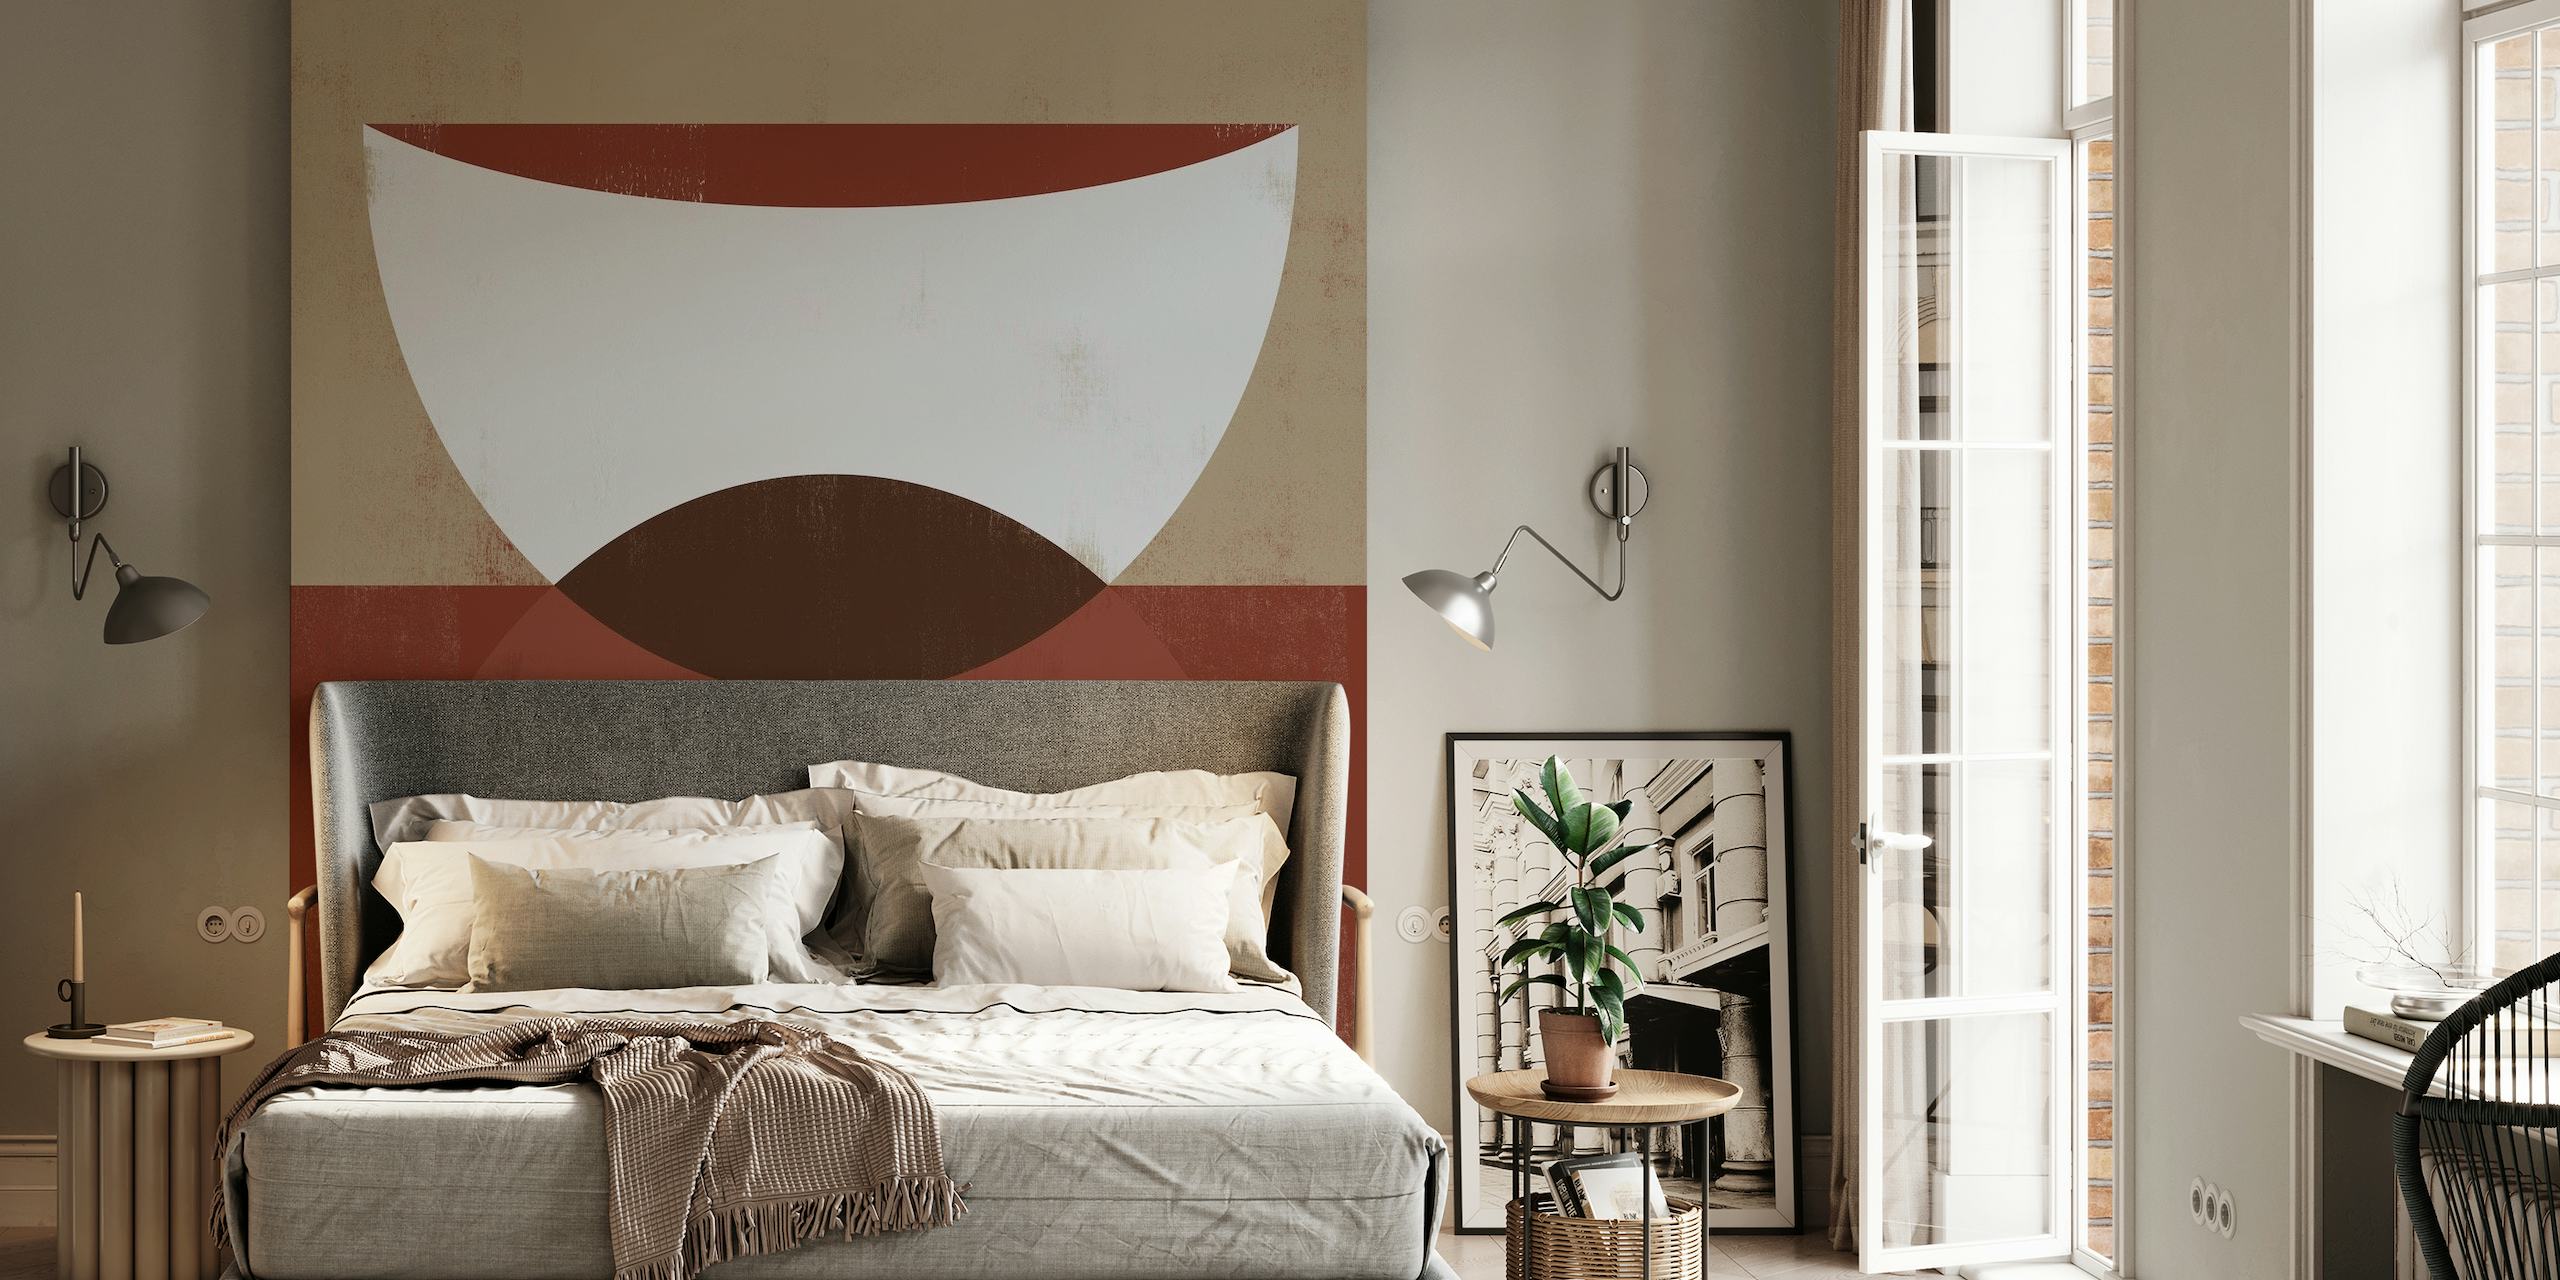 SHE Rouge 4 apstraktni geometrijski zidni mural u krem, smeđoj i kestenjastoj boji